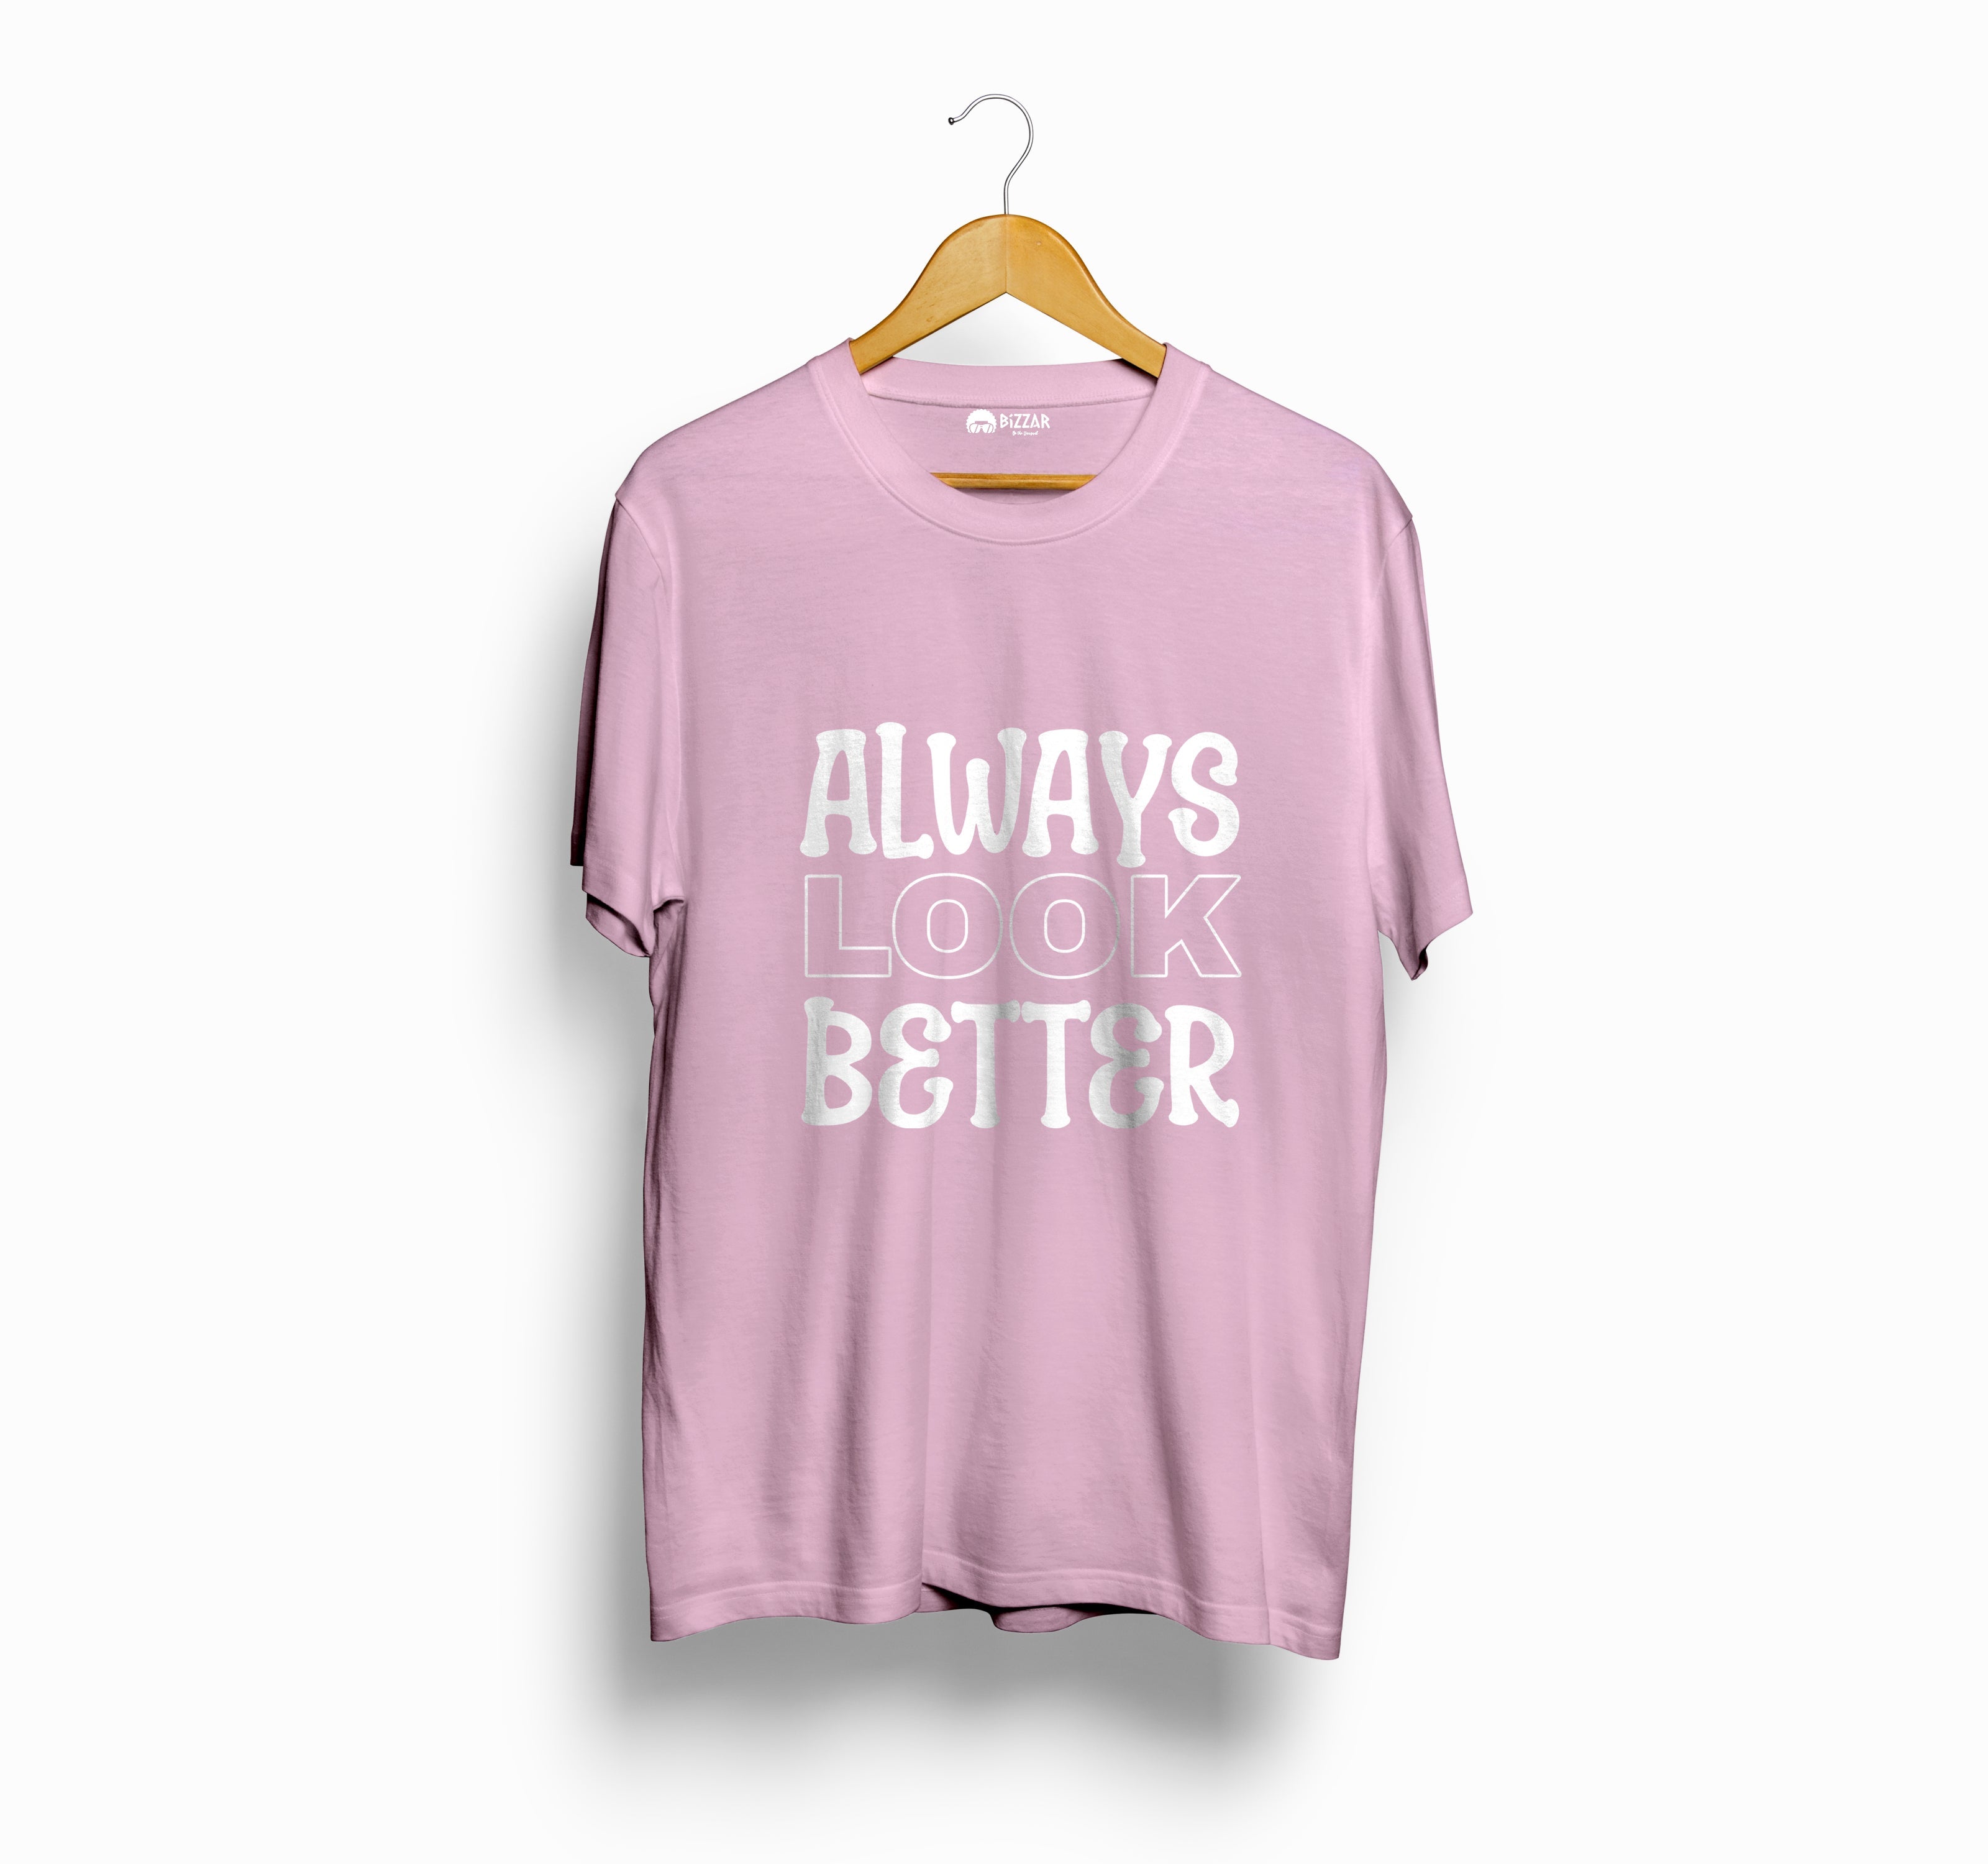 Bizzar's Always Look Better Light Pink T-Shirt